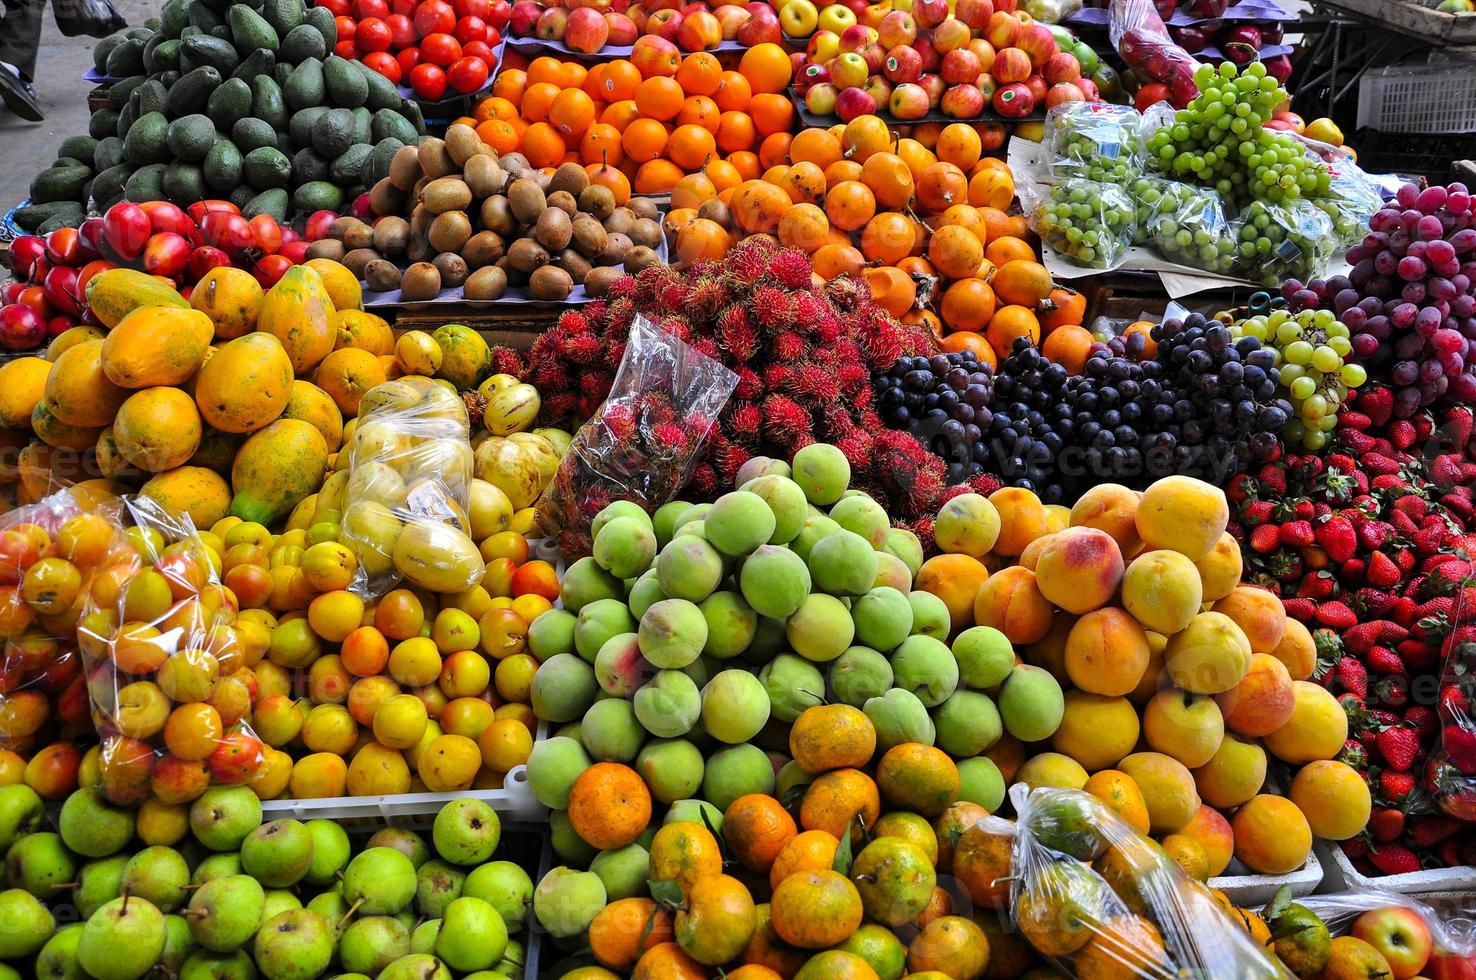 Früchte und Gemüse foto